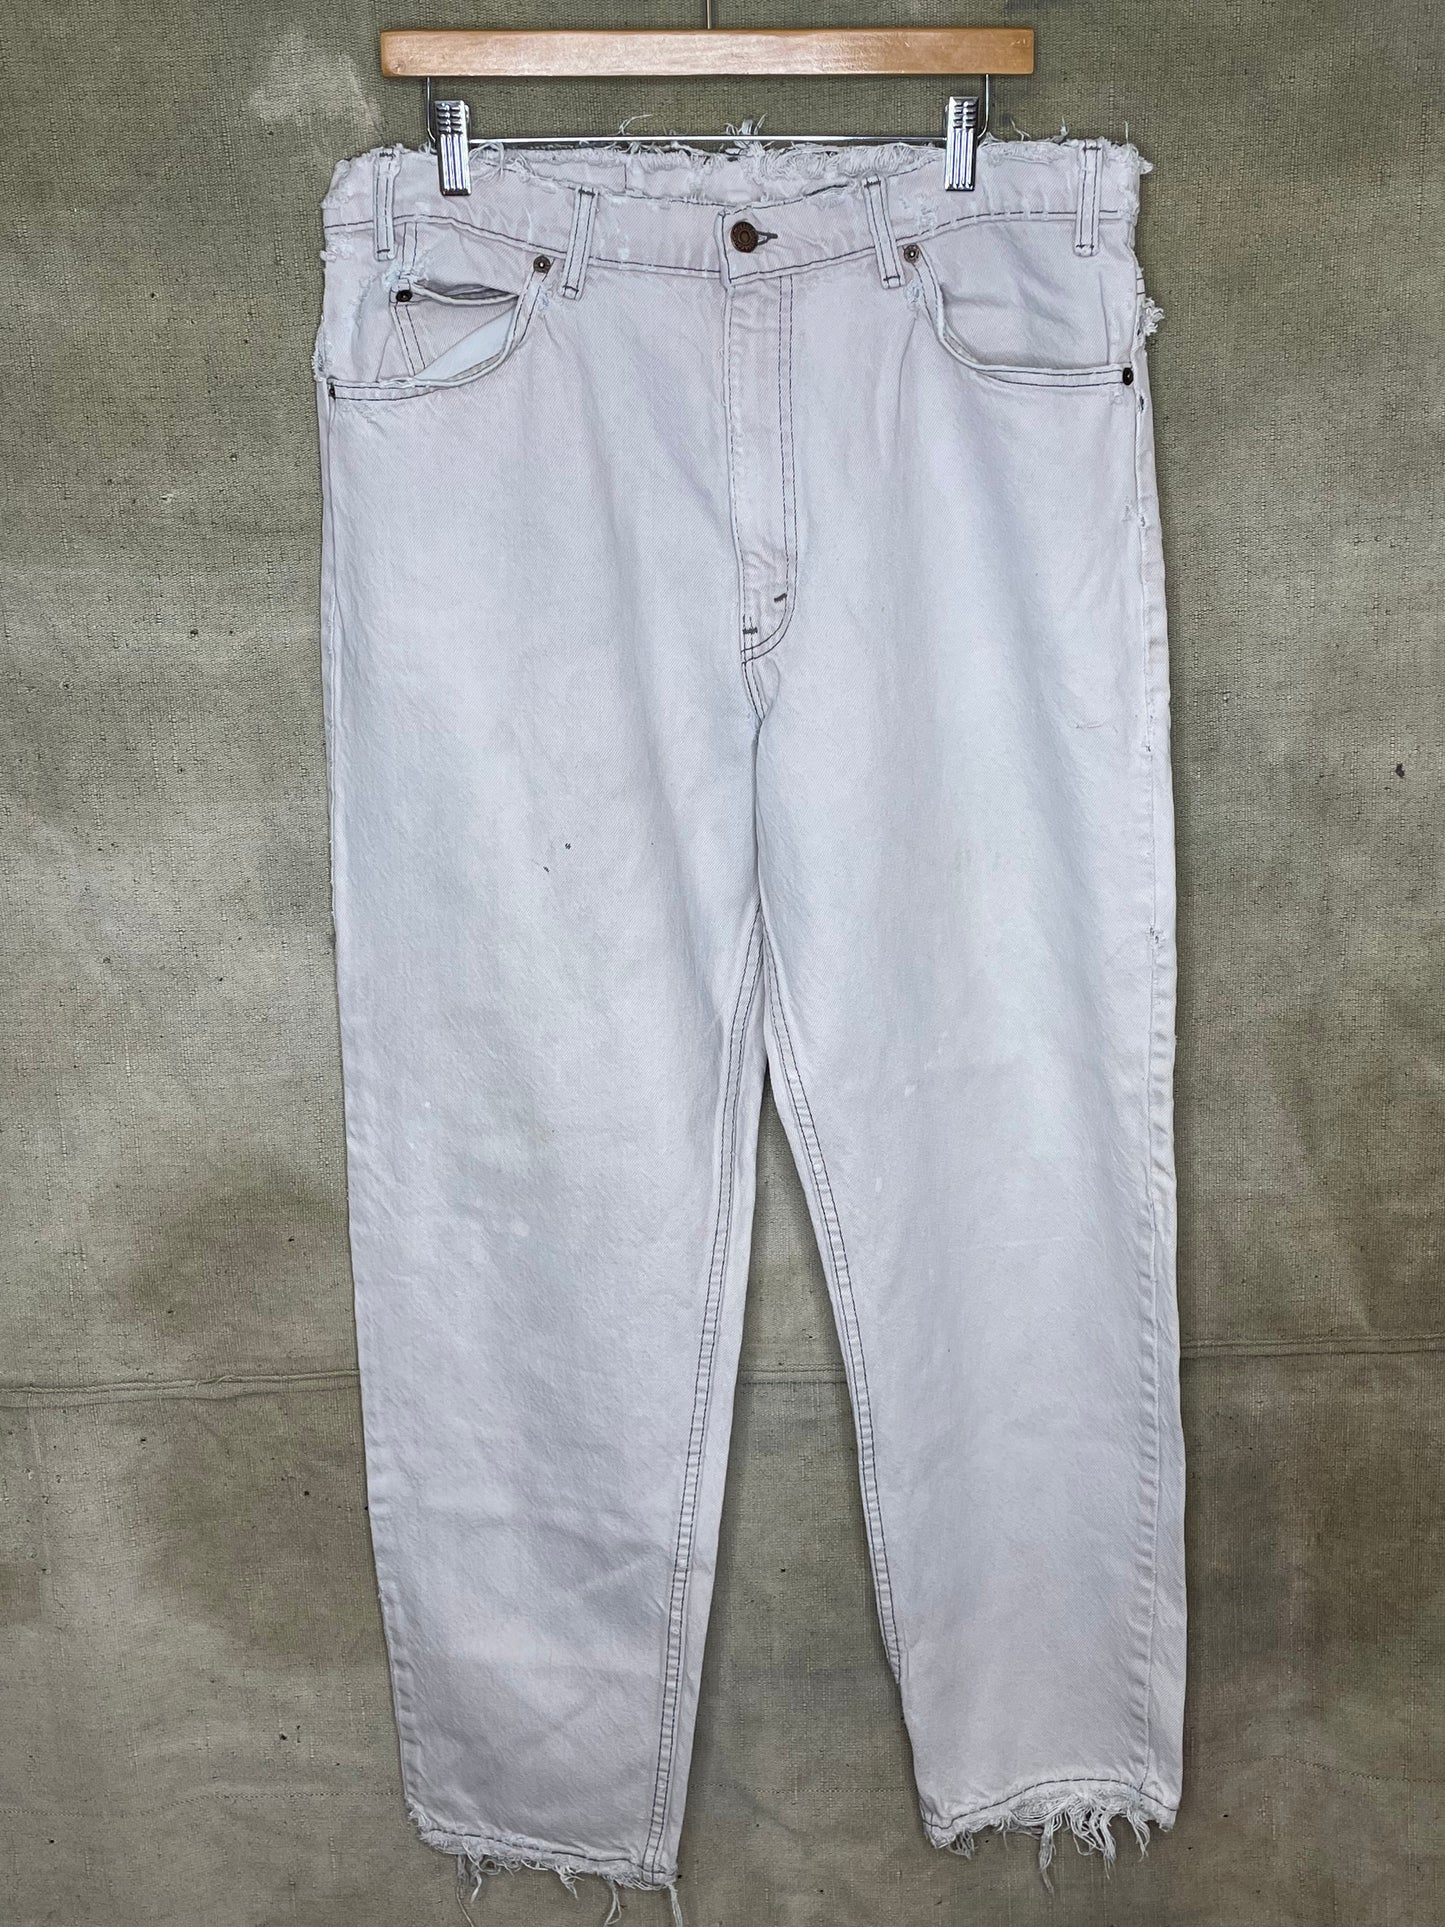 Vintage W36” x 31” 550 Light Wash Denim Levis Jeans